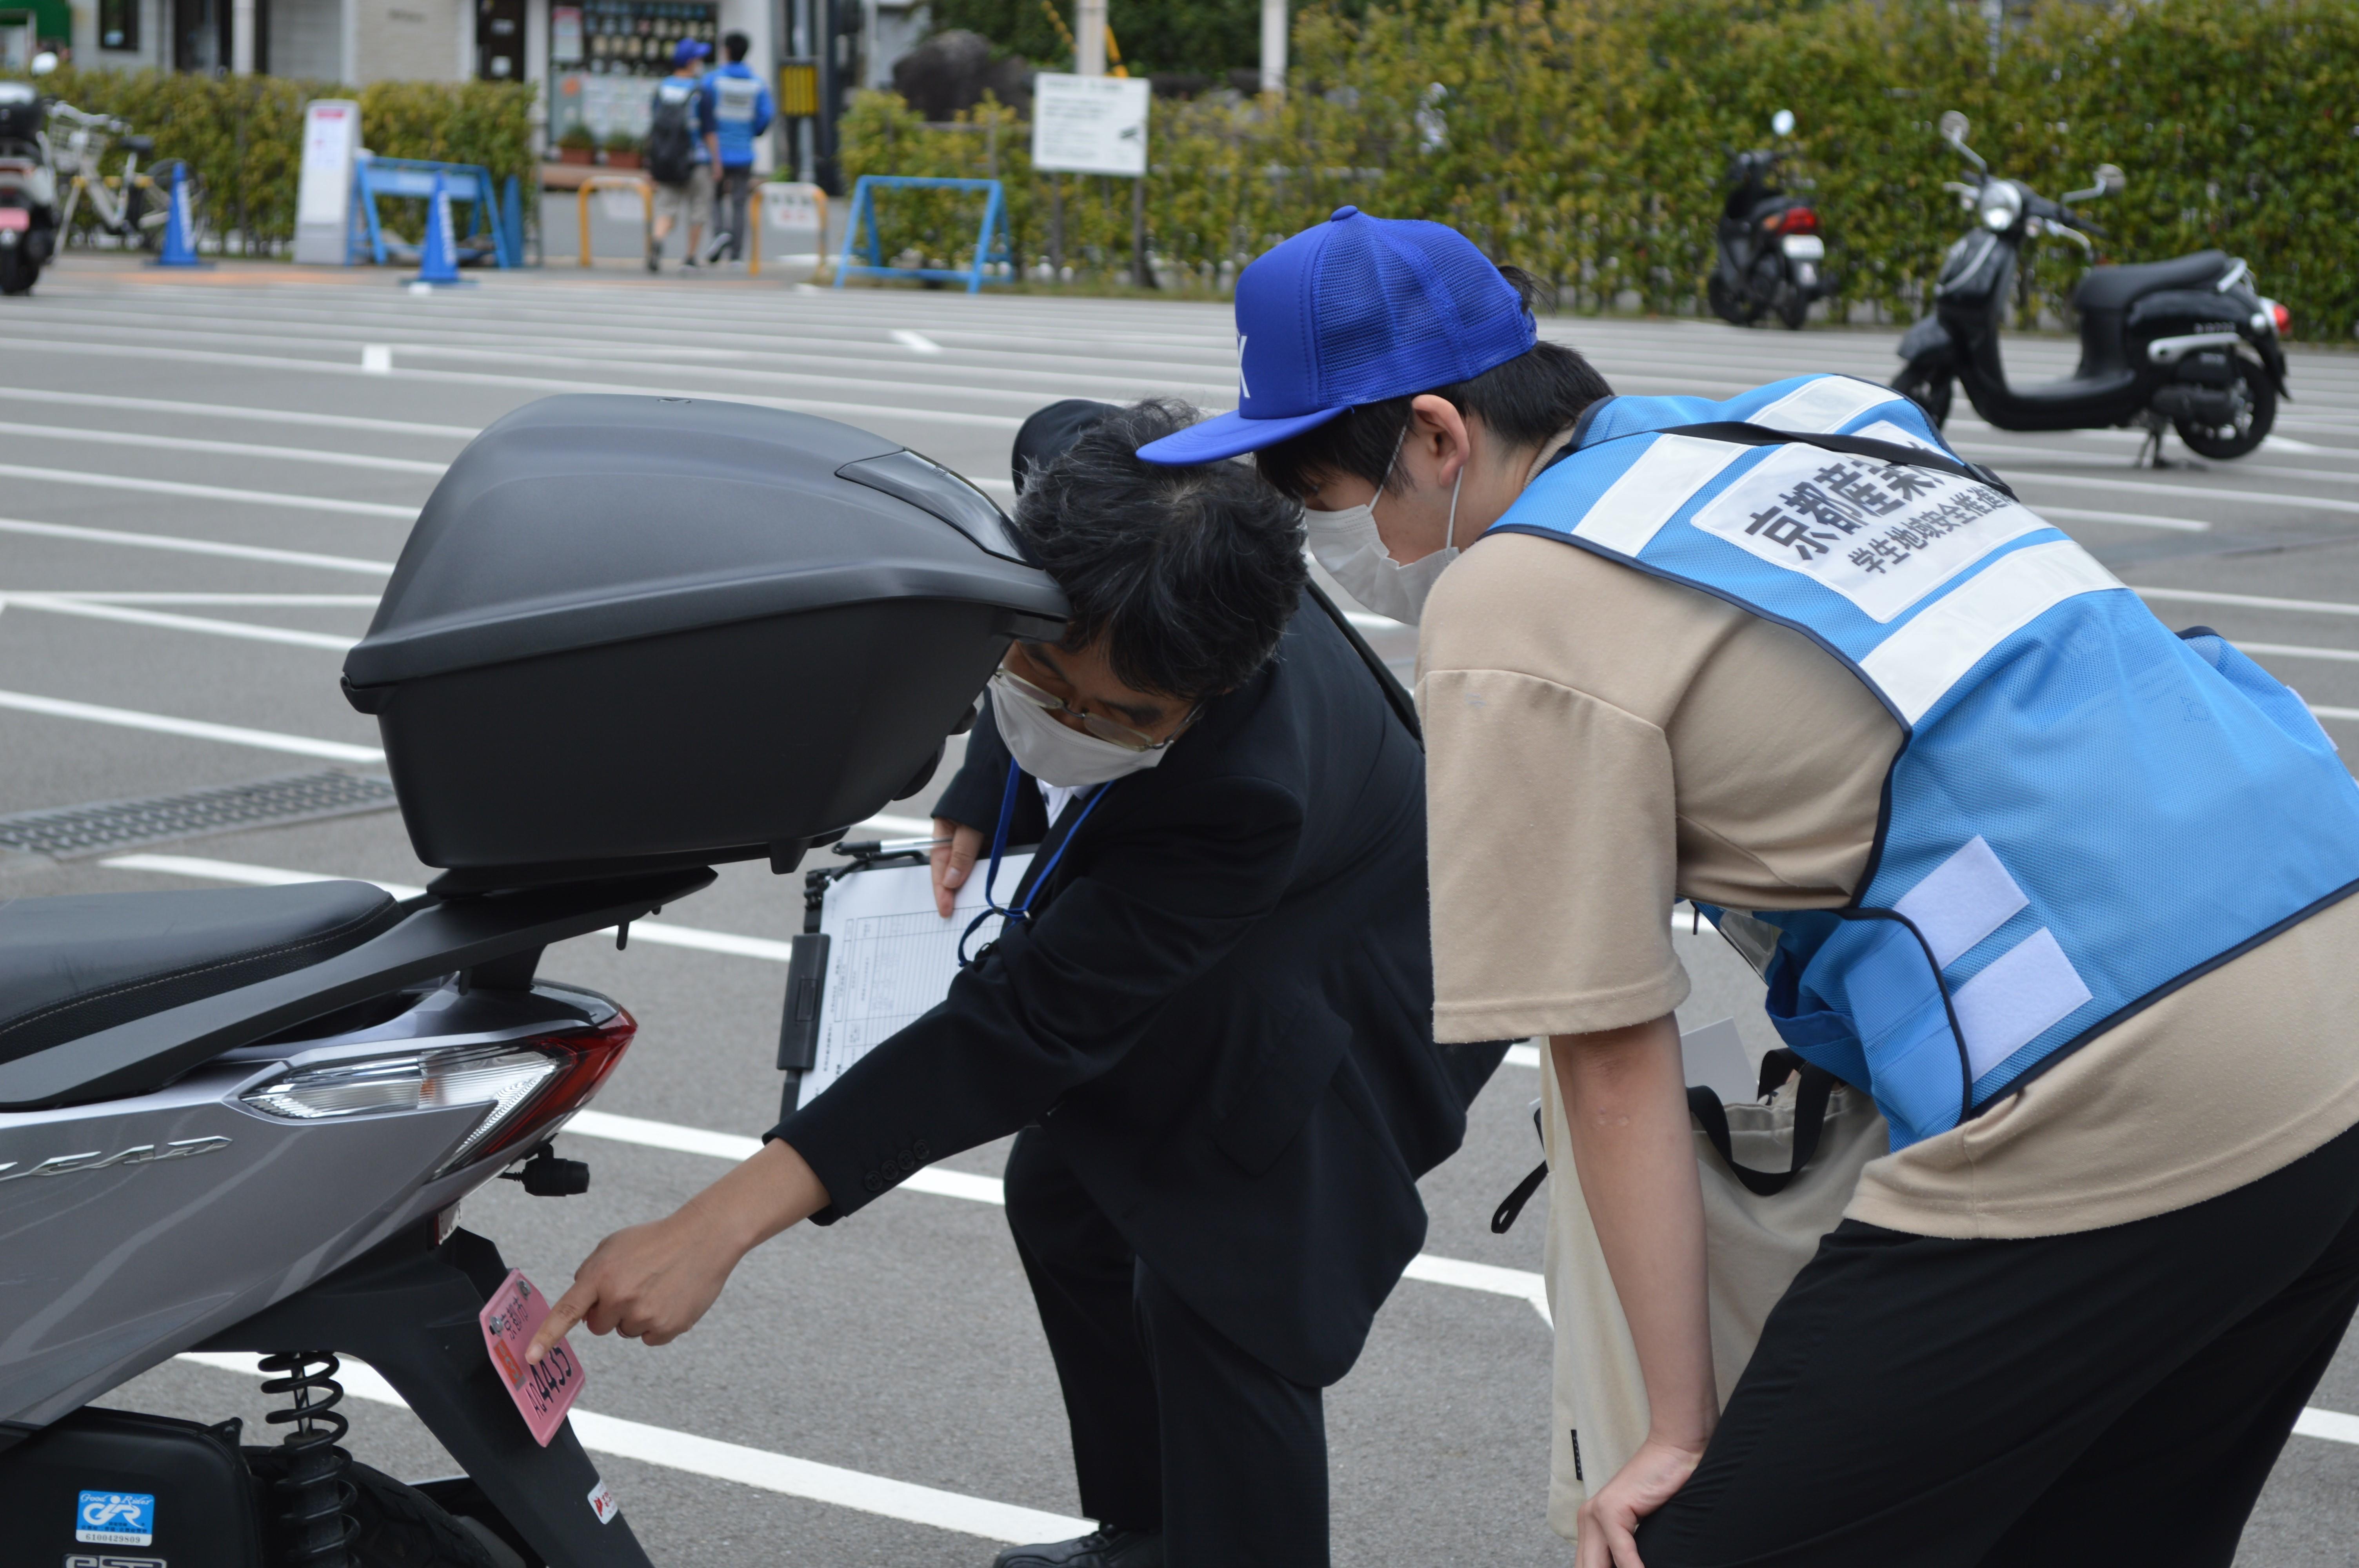 【京都産業大学】学生地域安全推進隊「サギタリウスチーム」が京都損害保険代理業協会と協力し、学生の自賠責保険加入を啓発